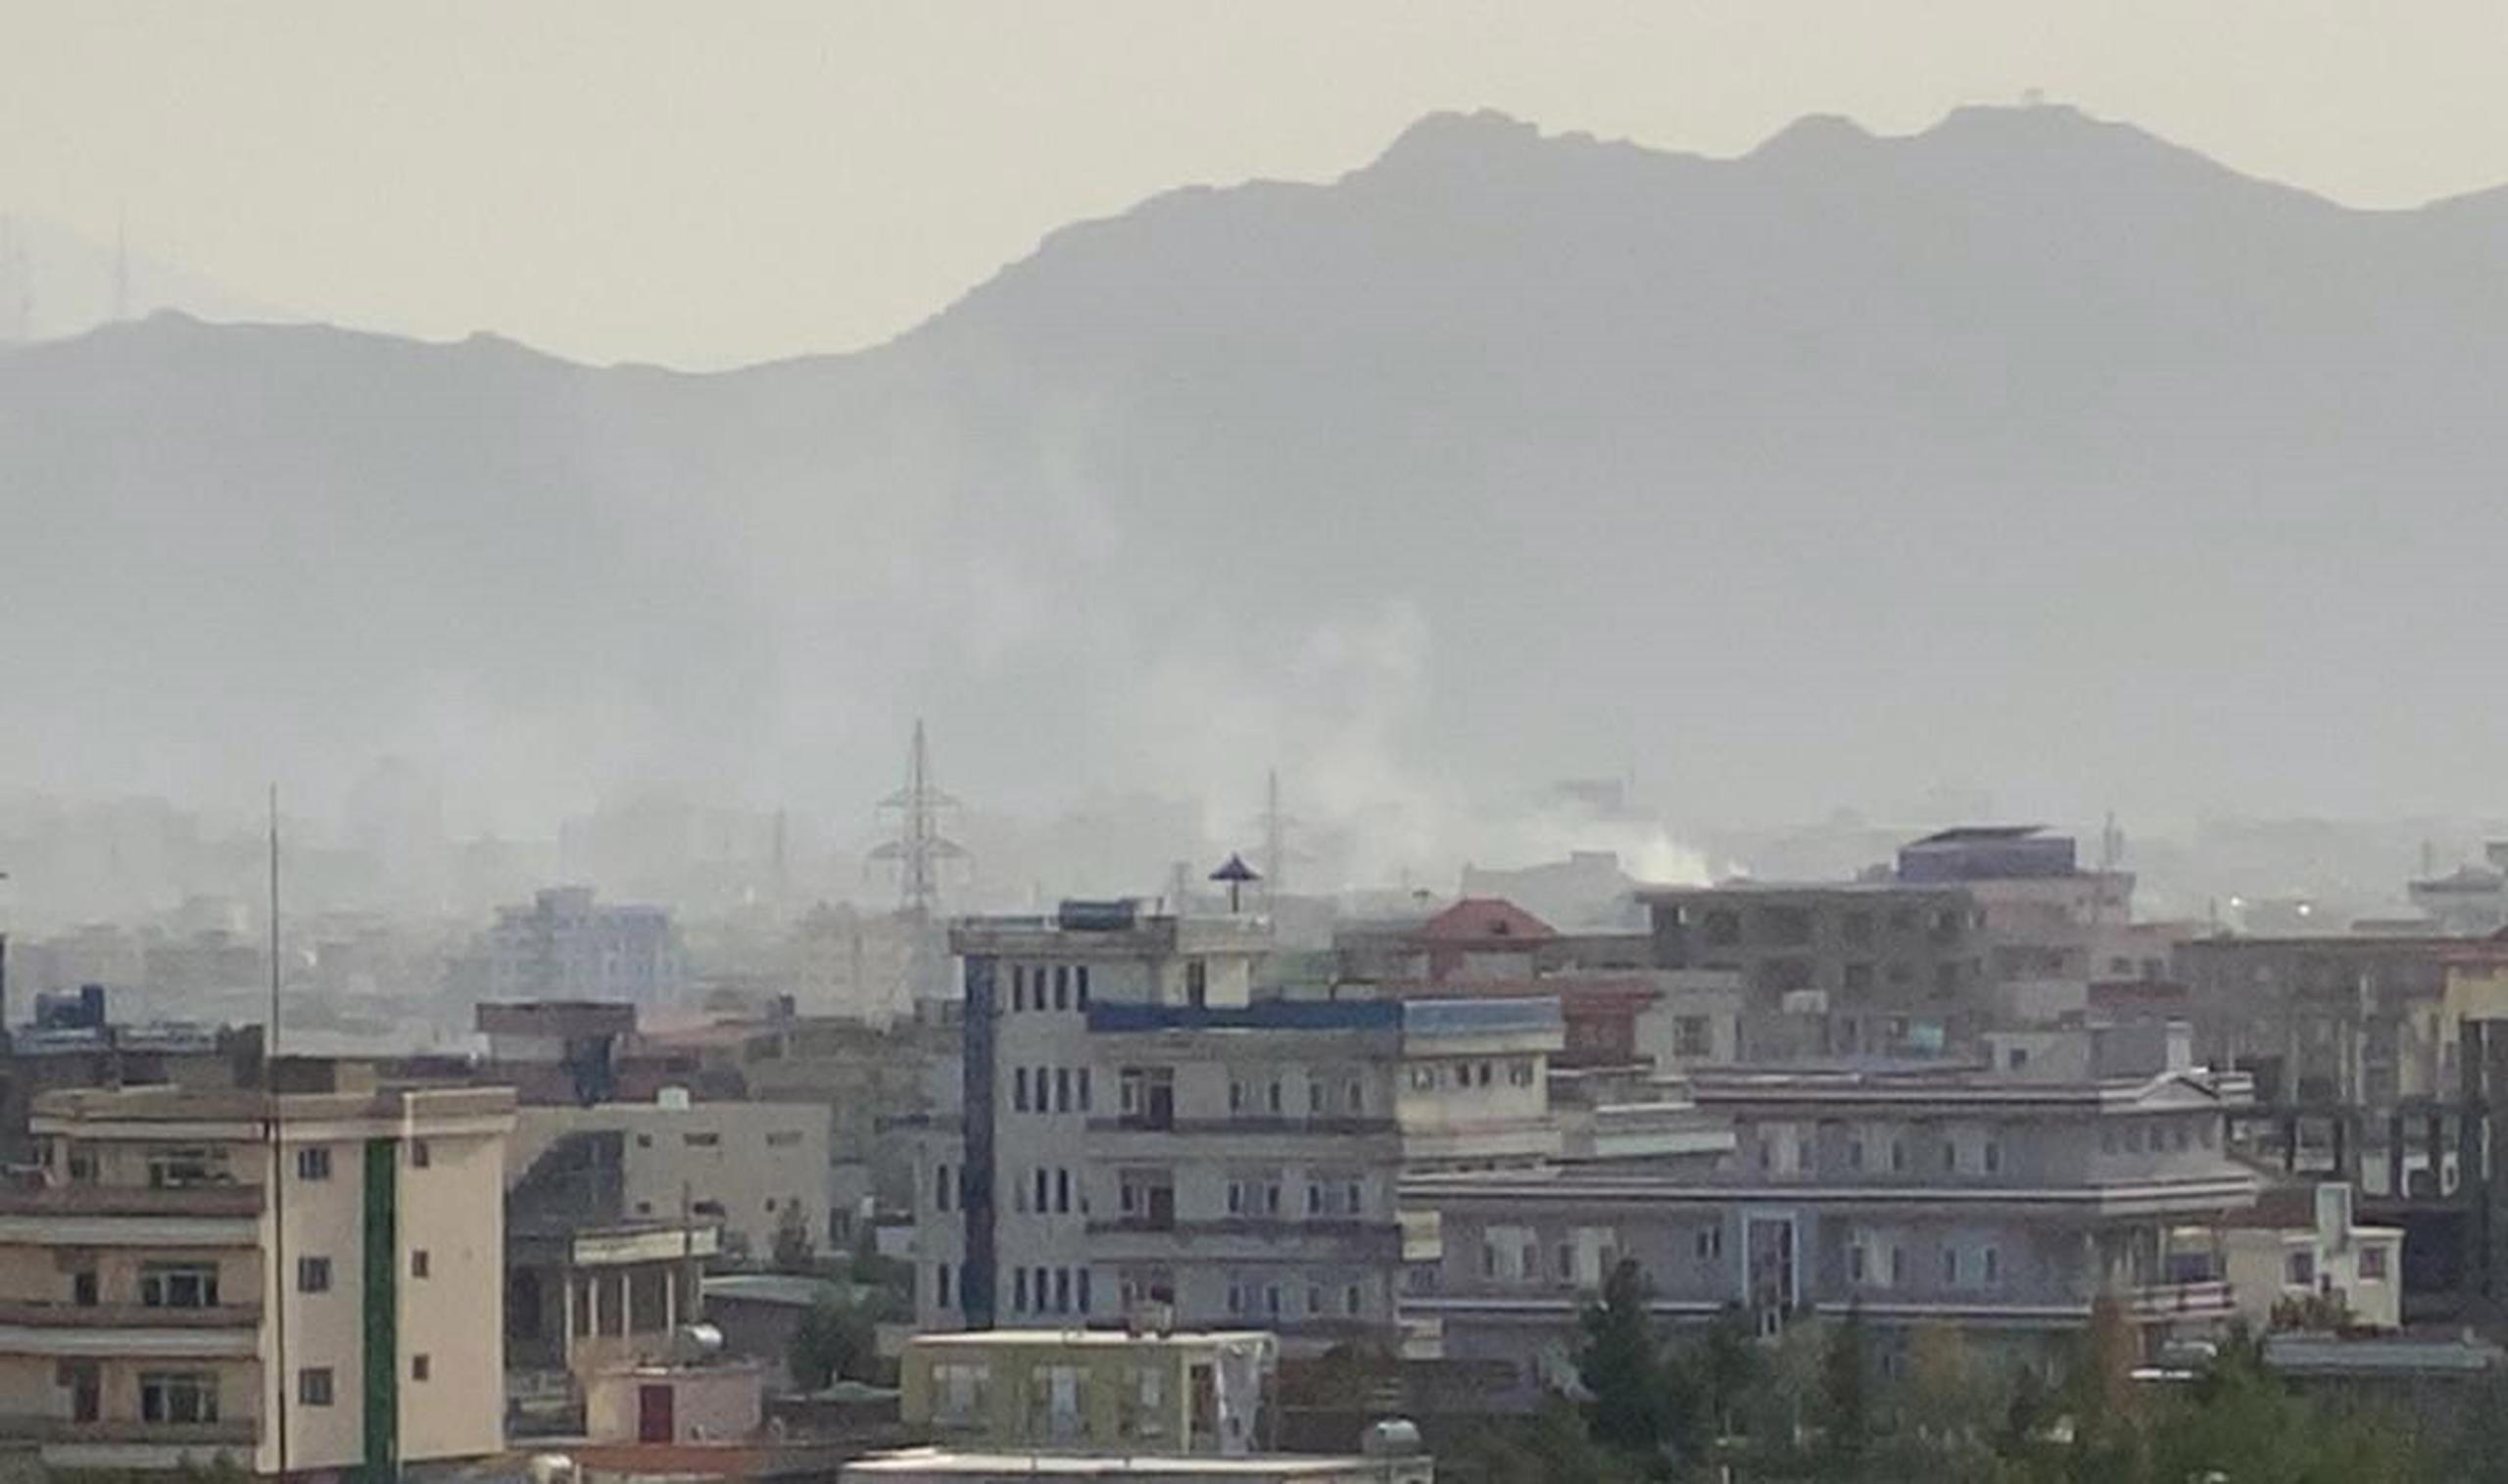 Vista de ondas de humo en el lugar tras una explosión cerca del Aeropuerto Internacional Hamid Karzai, en Kabul, Afganistán, hoy 29 de agosto de 2021. EFE/EPA/STRINGER
